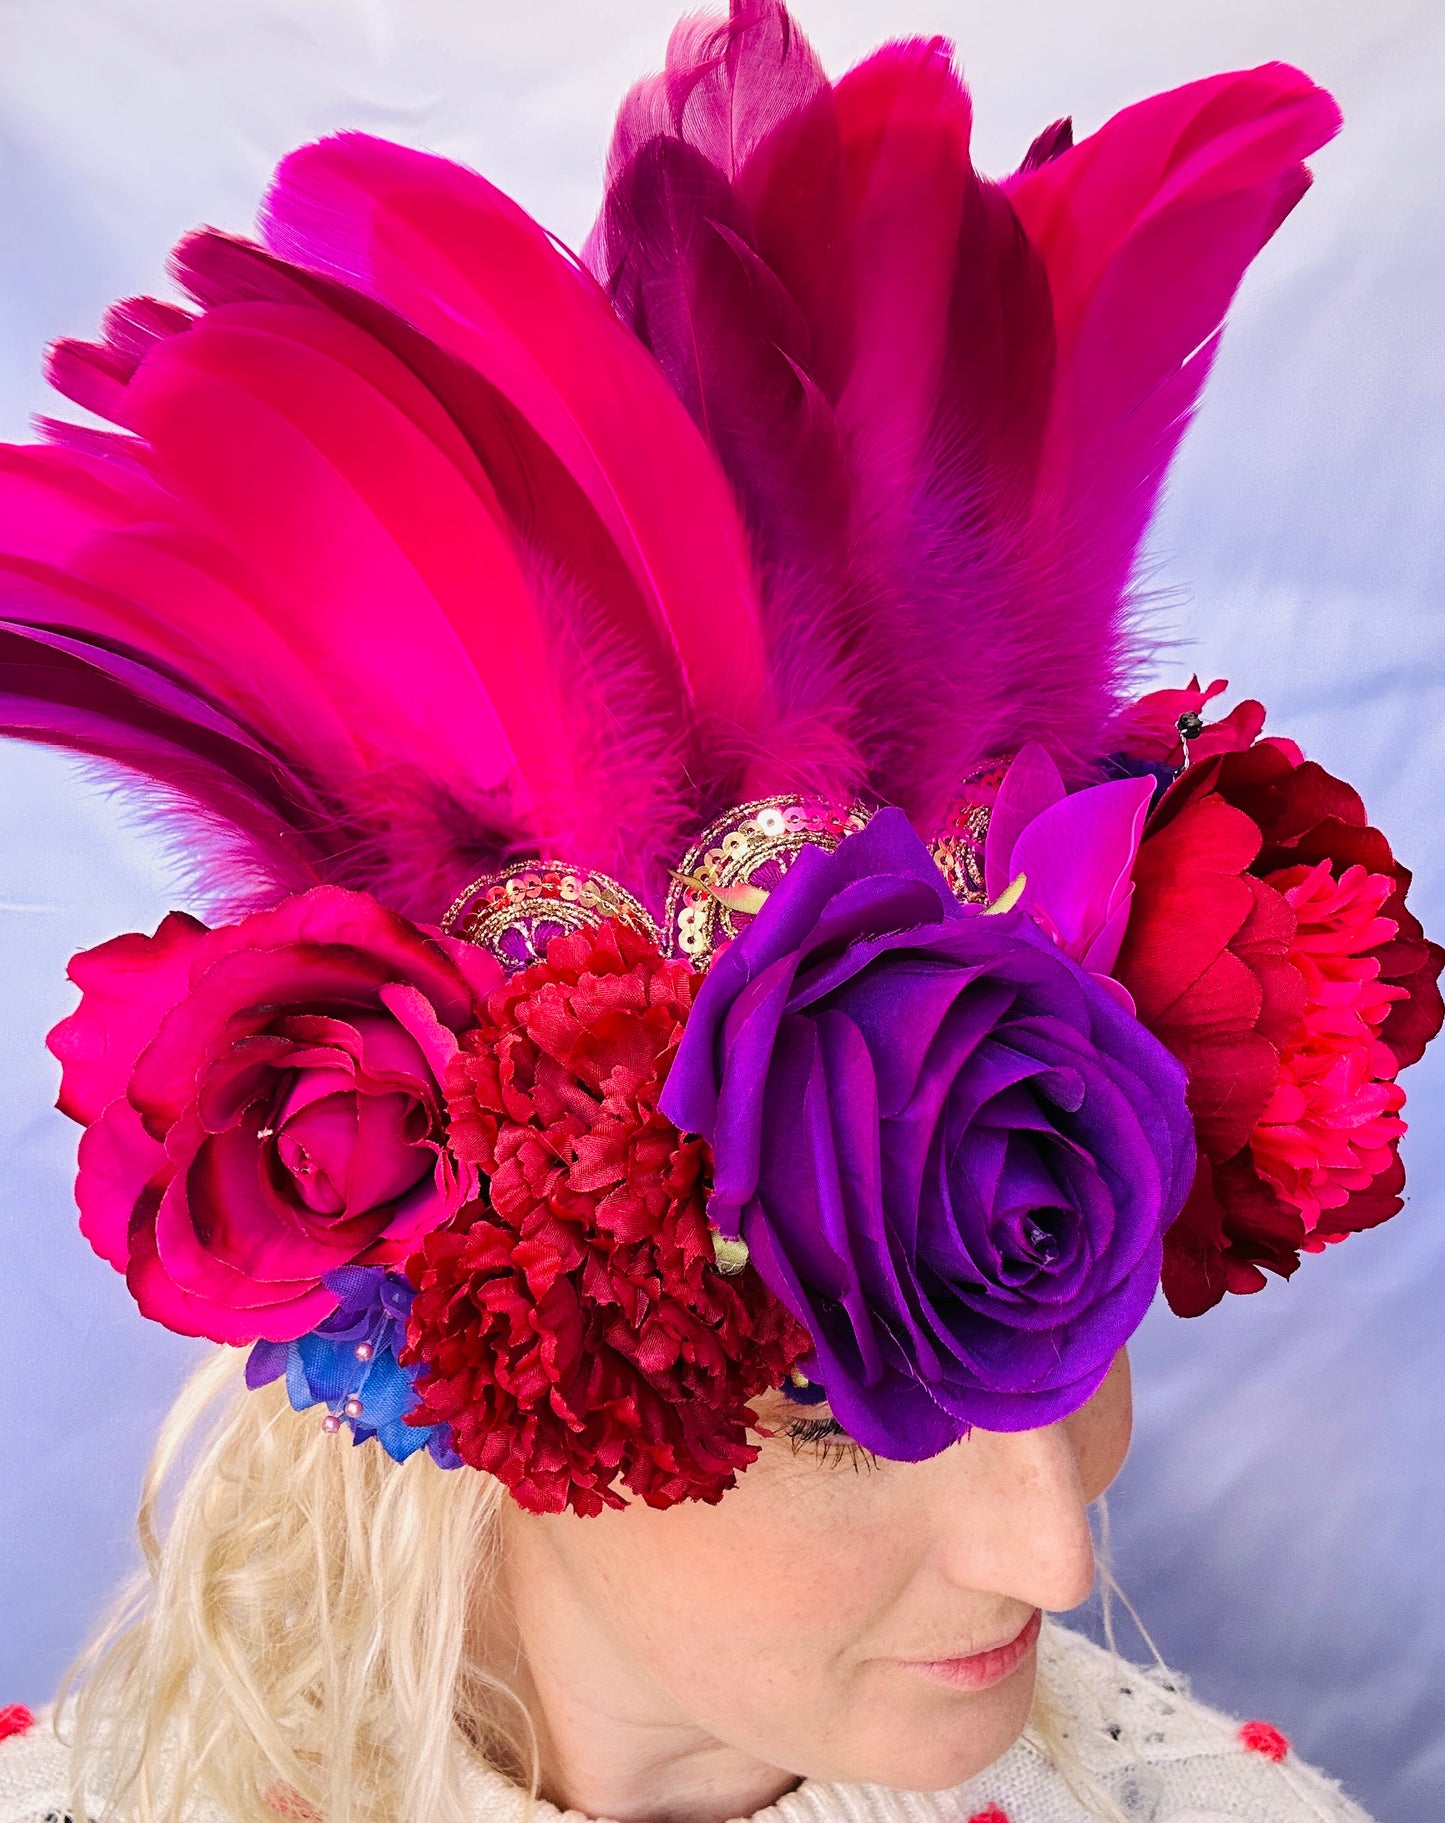 Sunset flower deluxe handmade headdress